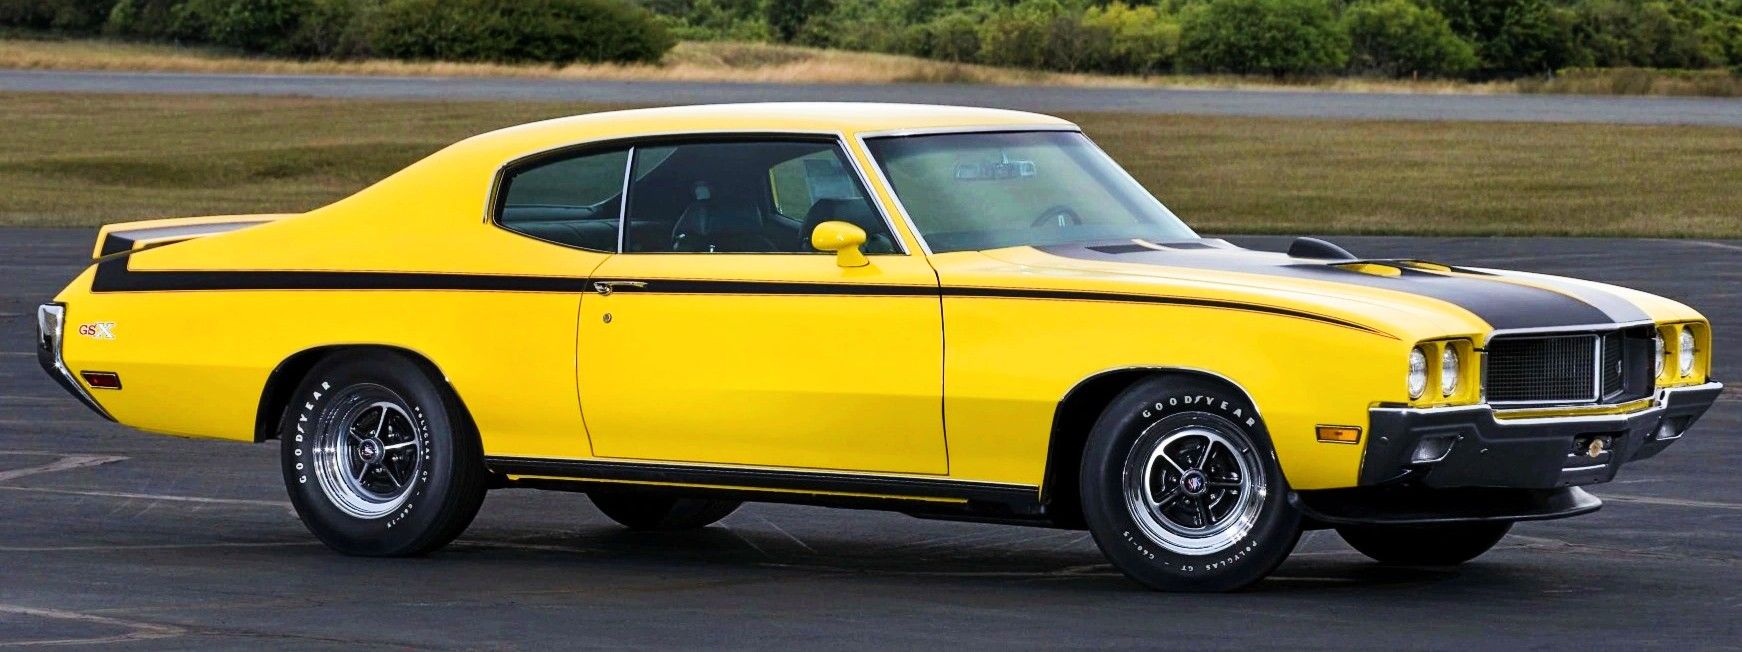 1970 Buick GSX side angle